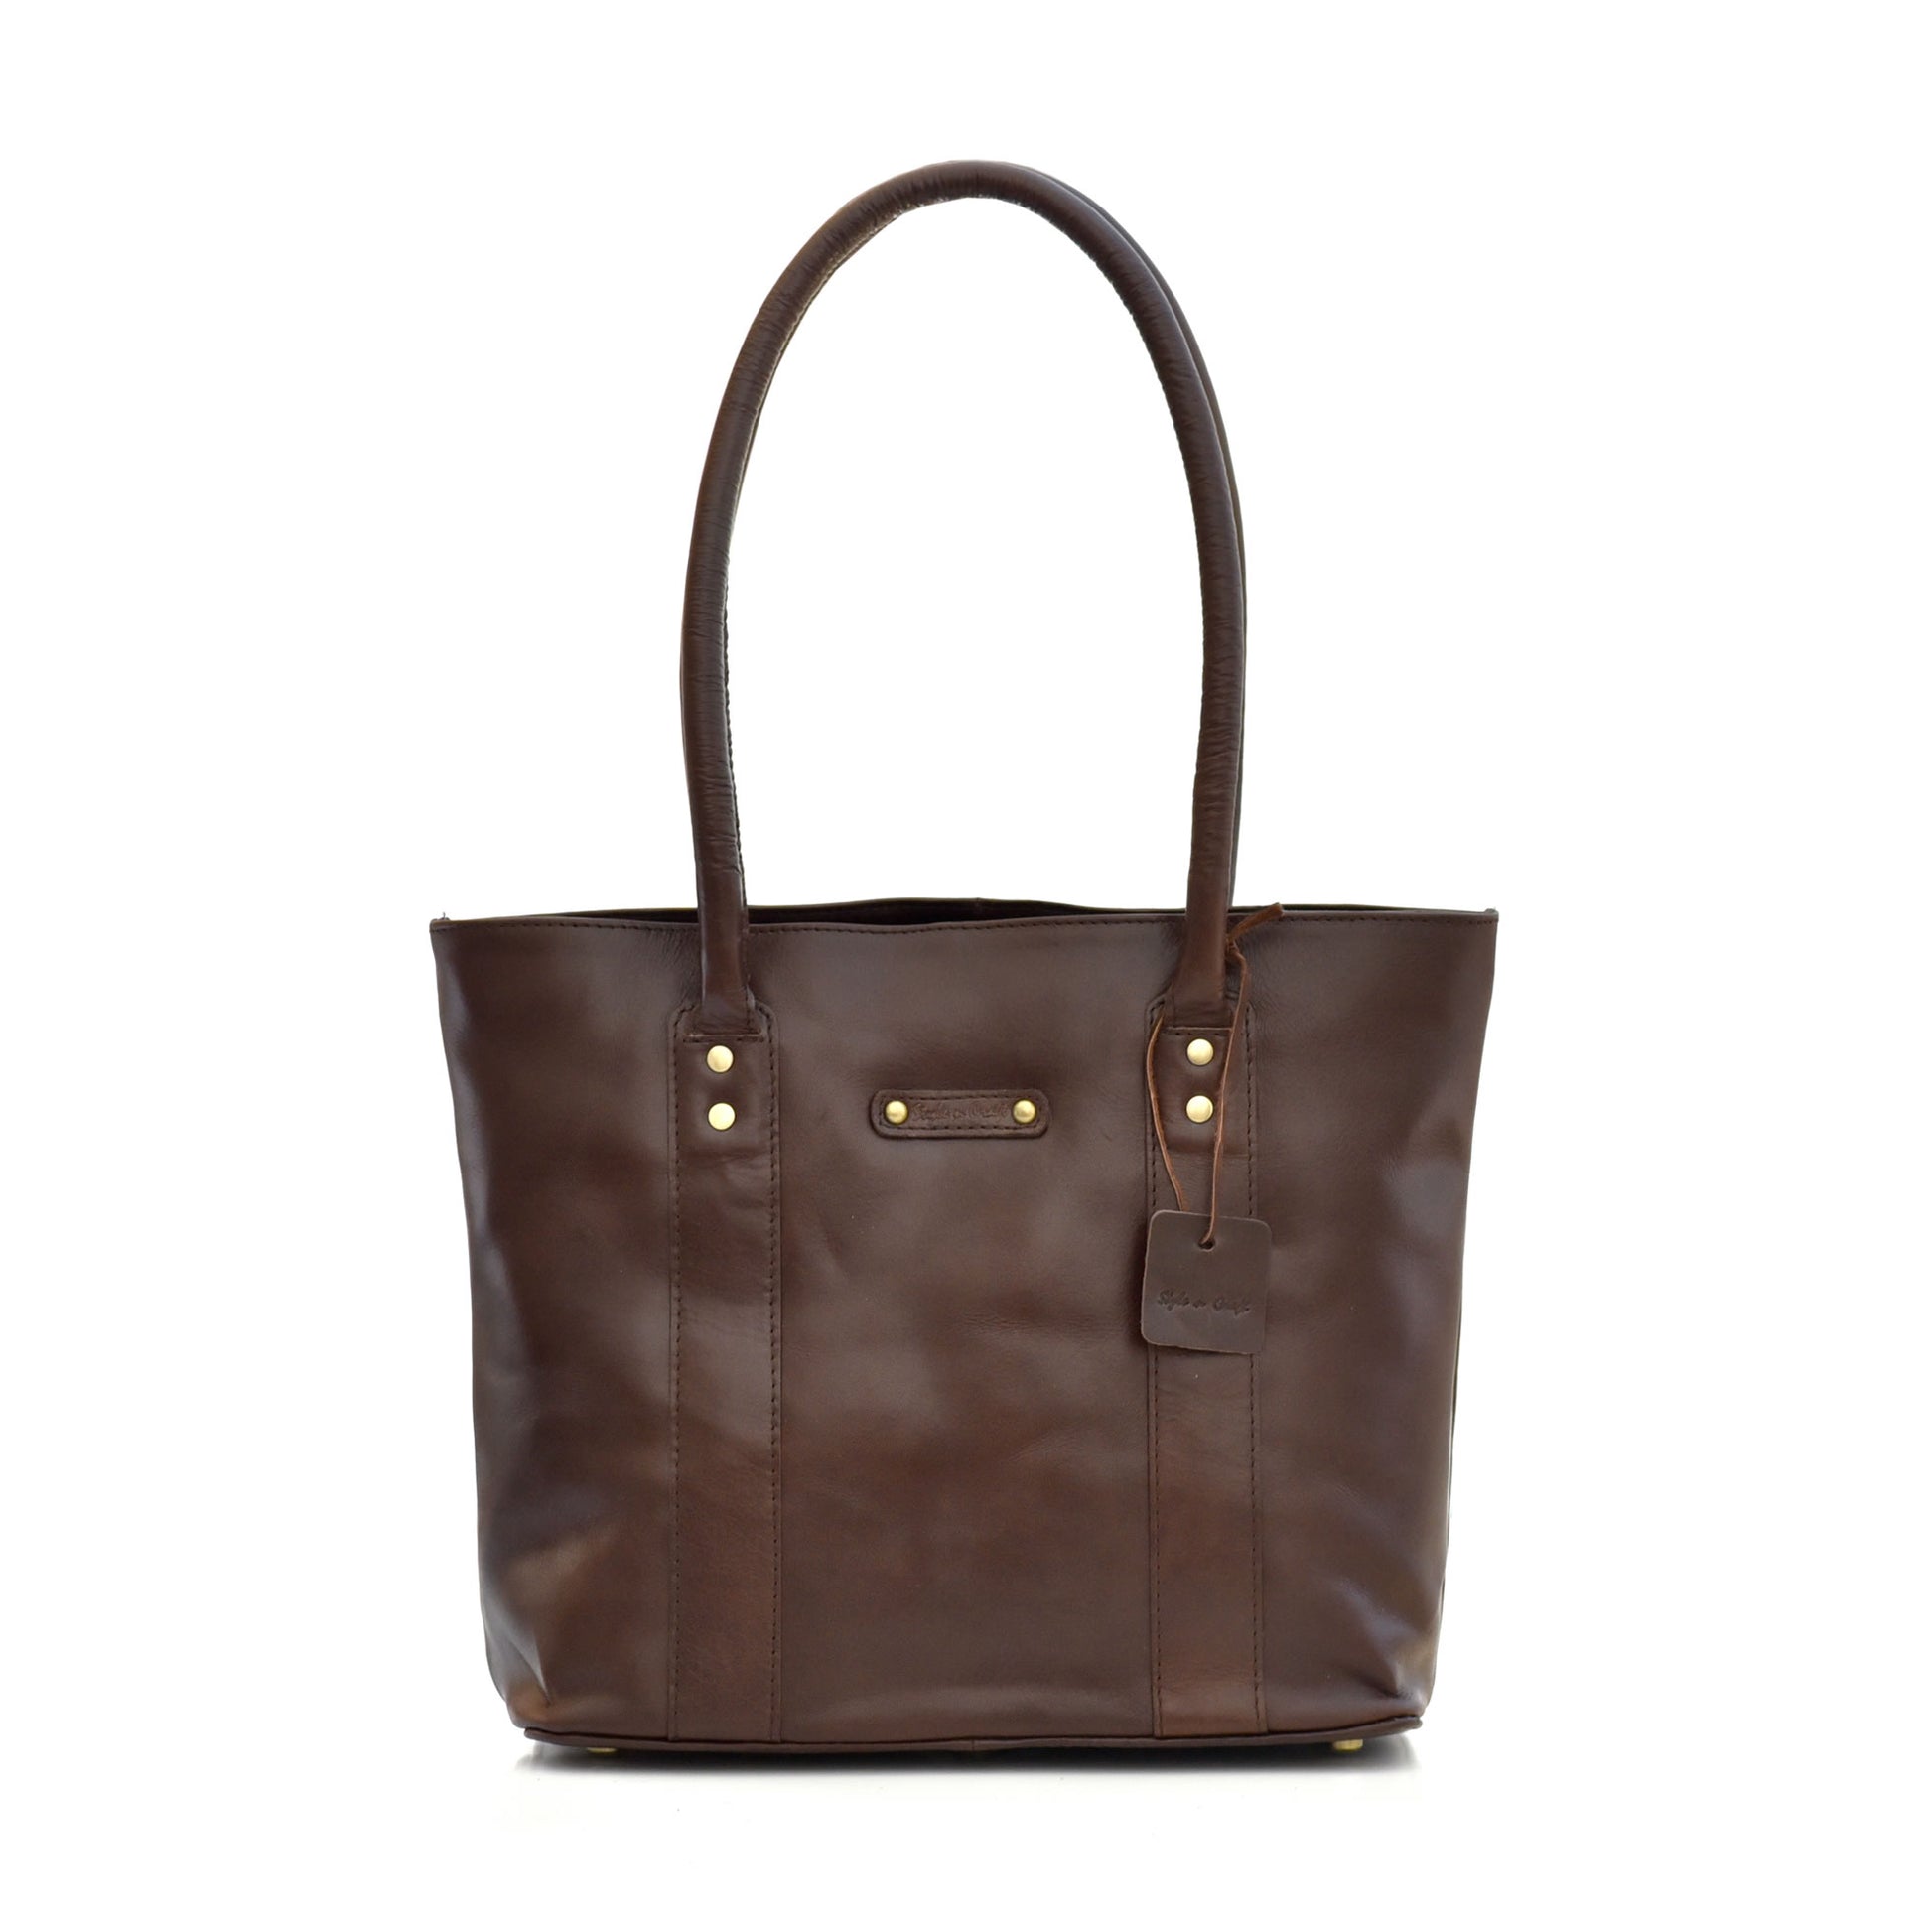 Style n Craft 392004 Ladies Tote Bag in Full Grain Dark Brown Leather - Front View